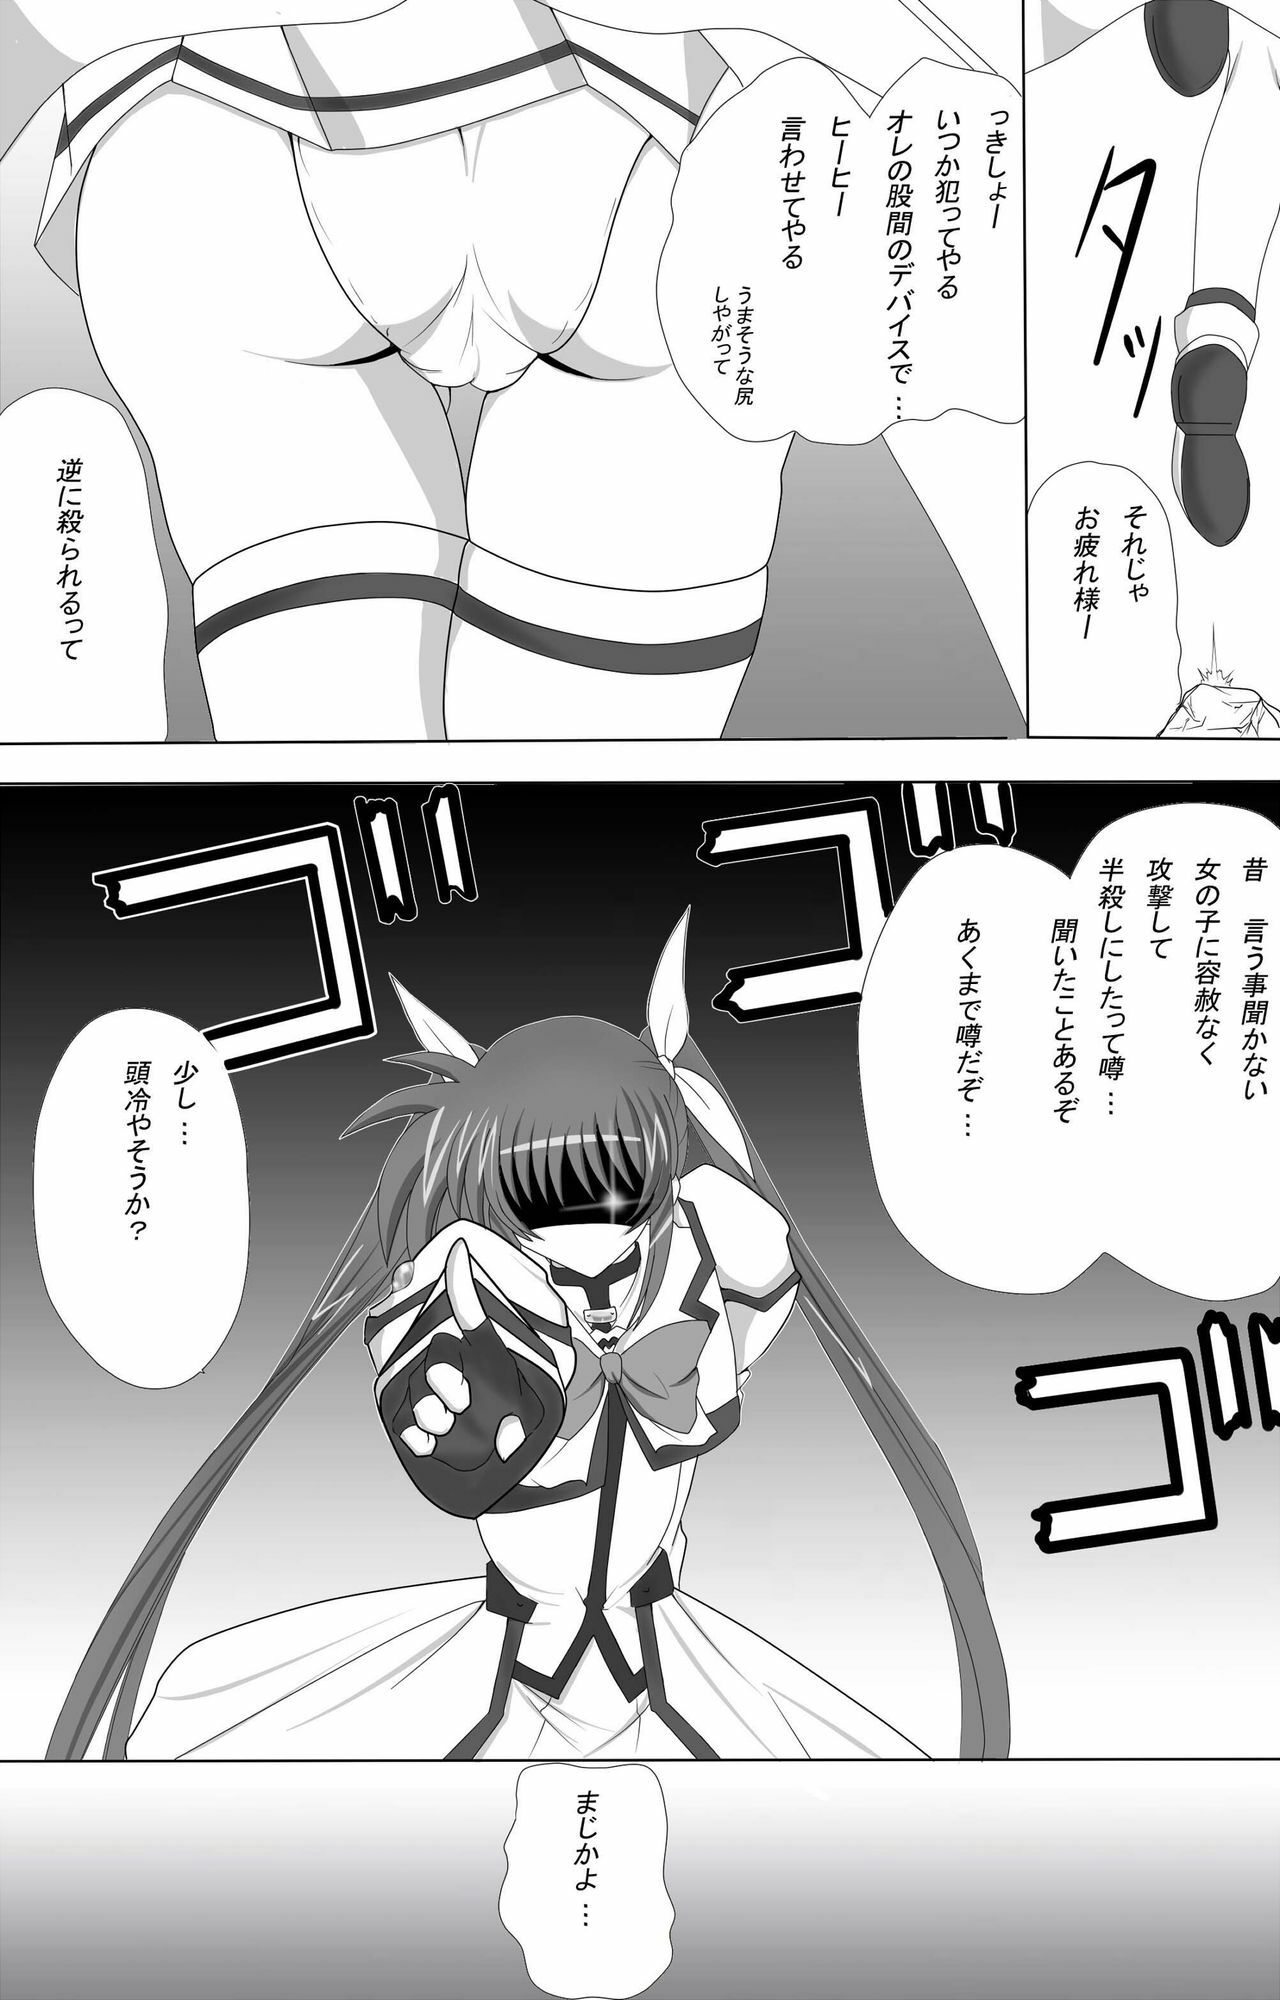 (CT16) [Nekoya (Kuon Kyoushirou)] Fate Salaclously (Mahou Shoujo Lyrical Nanoha) page 3 full